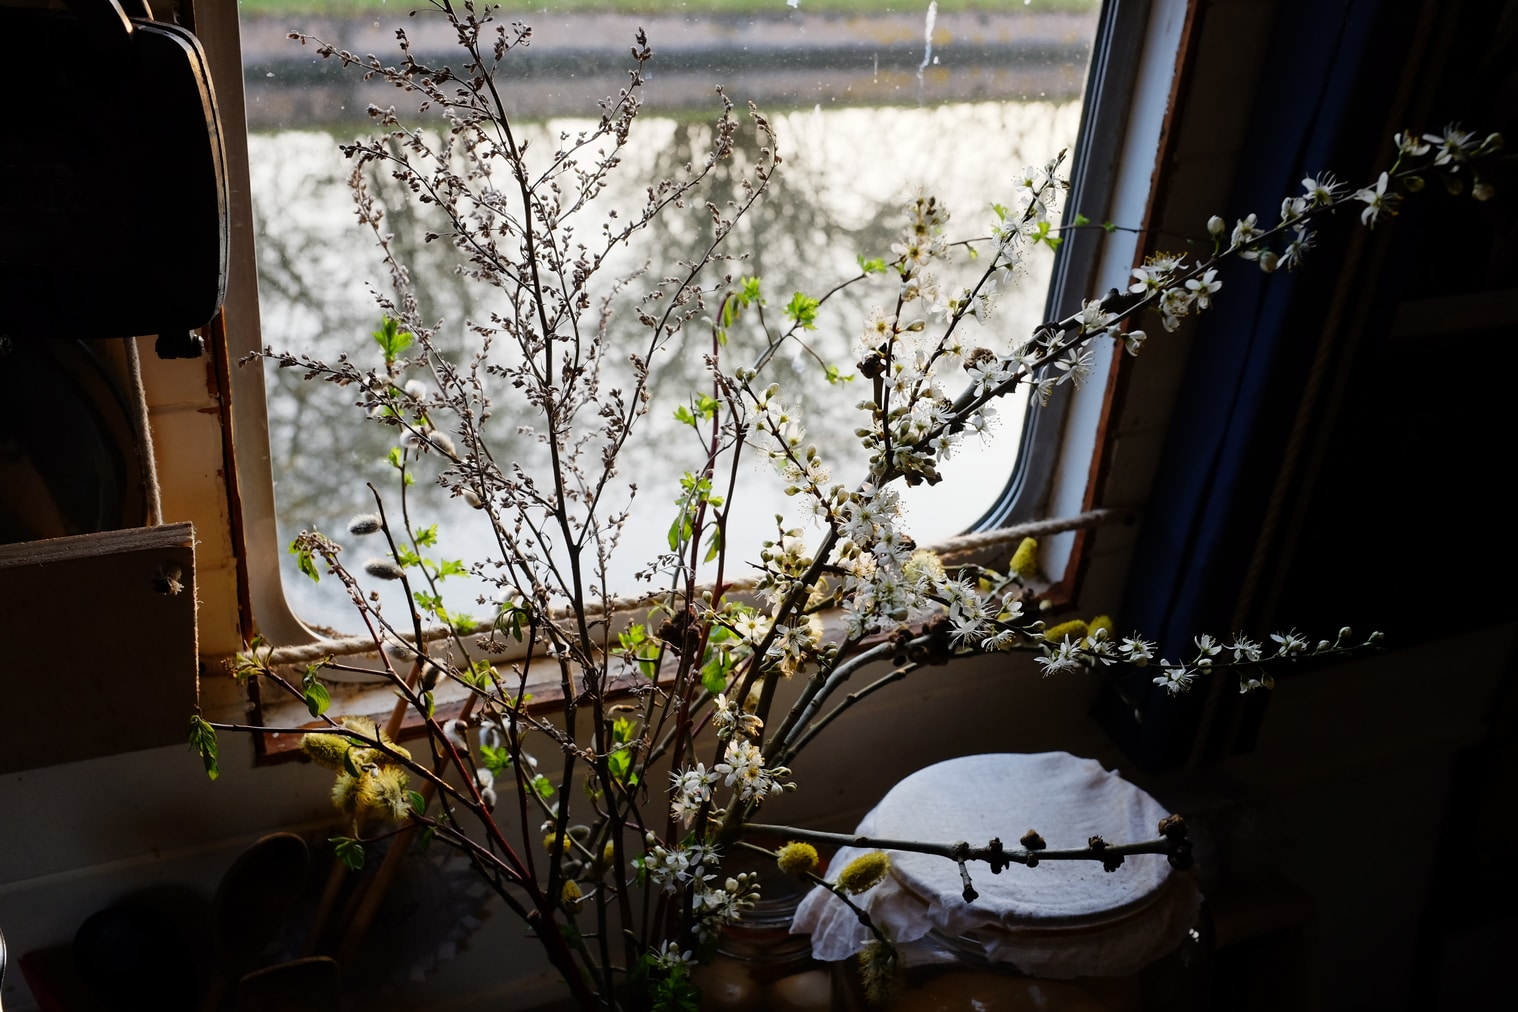 Hedgerow floristry - Prunus spinosa, Cornus sanguinea, Artemisia vulgaris seedhead, Salix caprea catkins and first leaves of hawthorn Crataegus monogyna